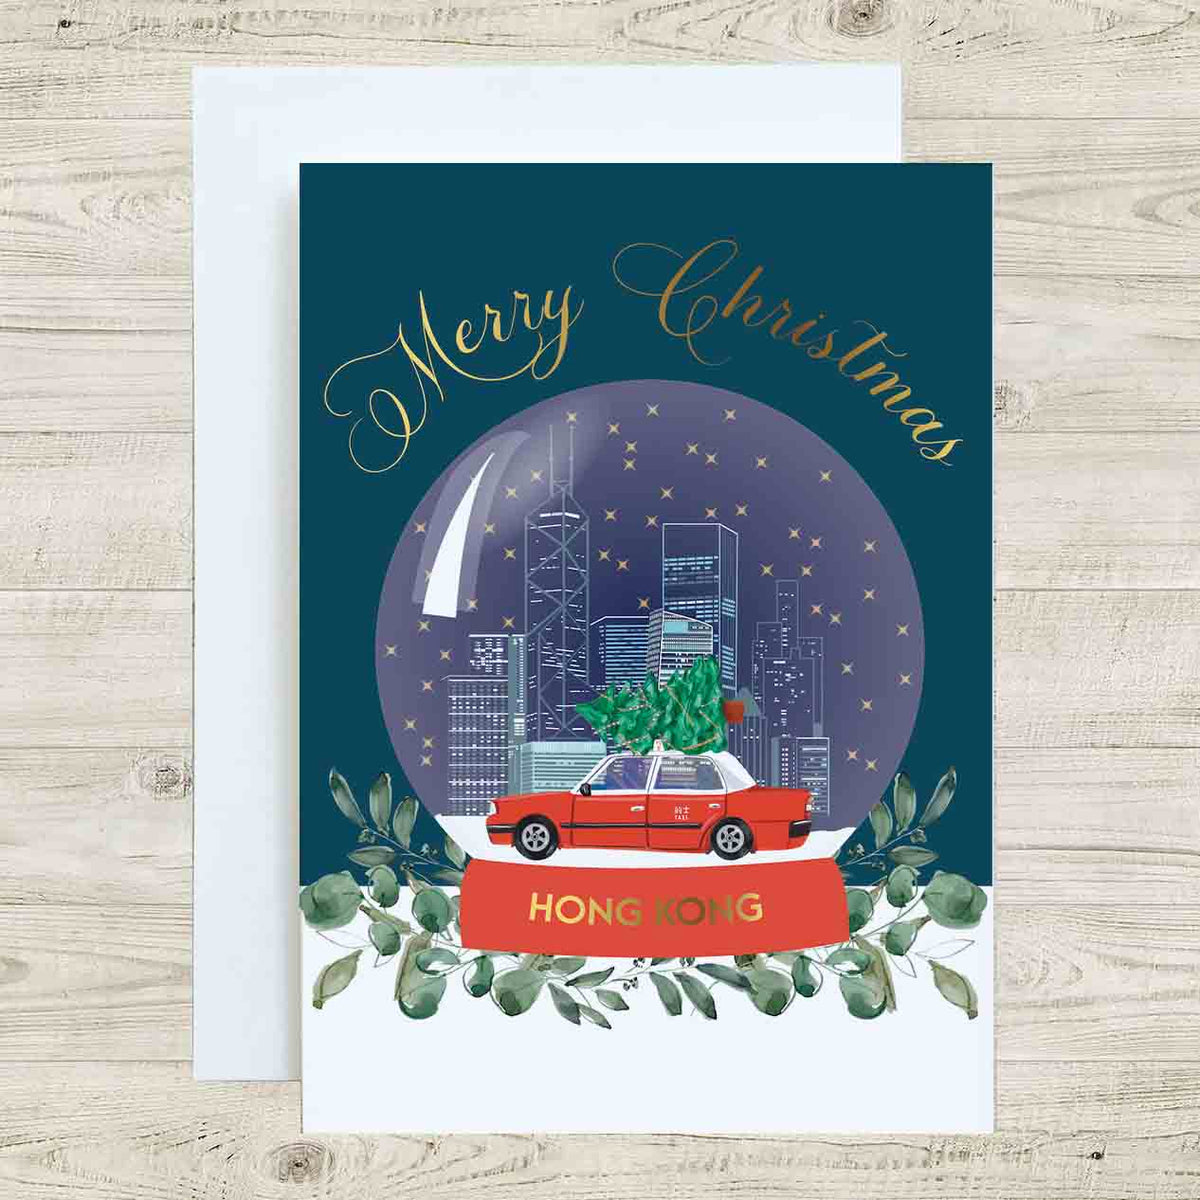 HONG KONG CHARITY CHRISTMAS CARD: Taxi Snow Globe